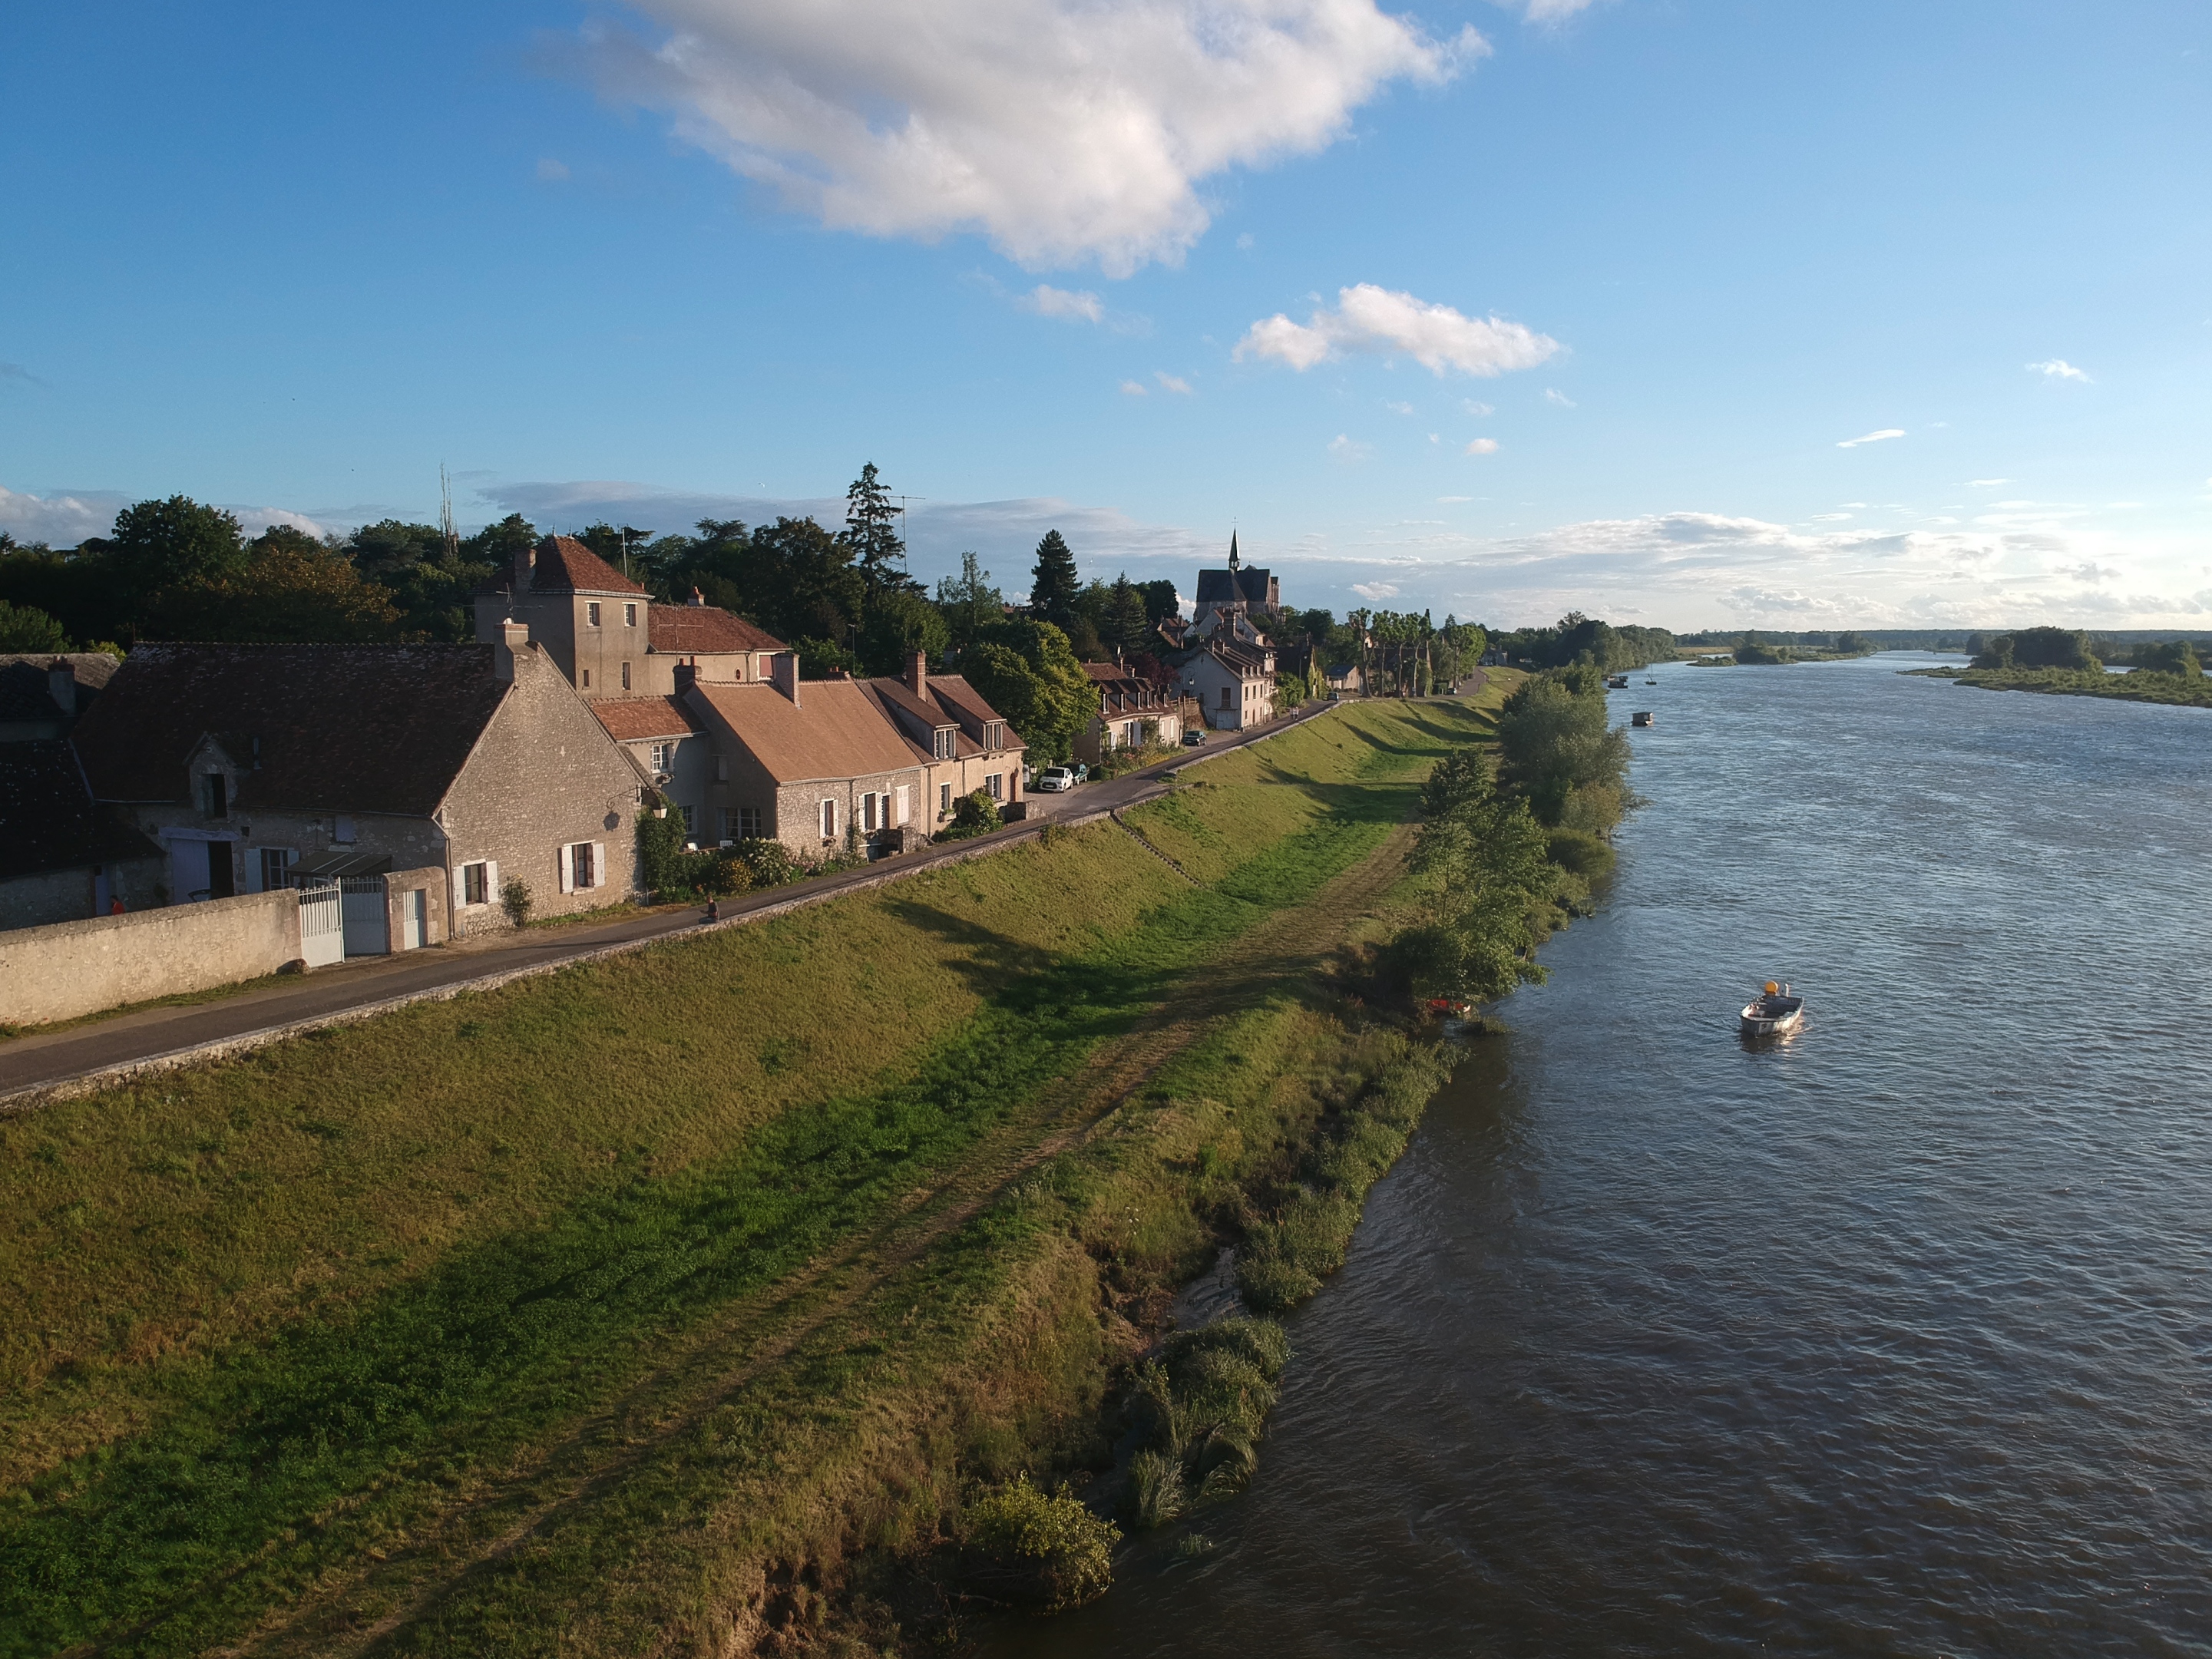 Ferme Hurtault des bords de Loire